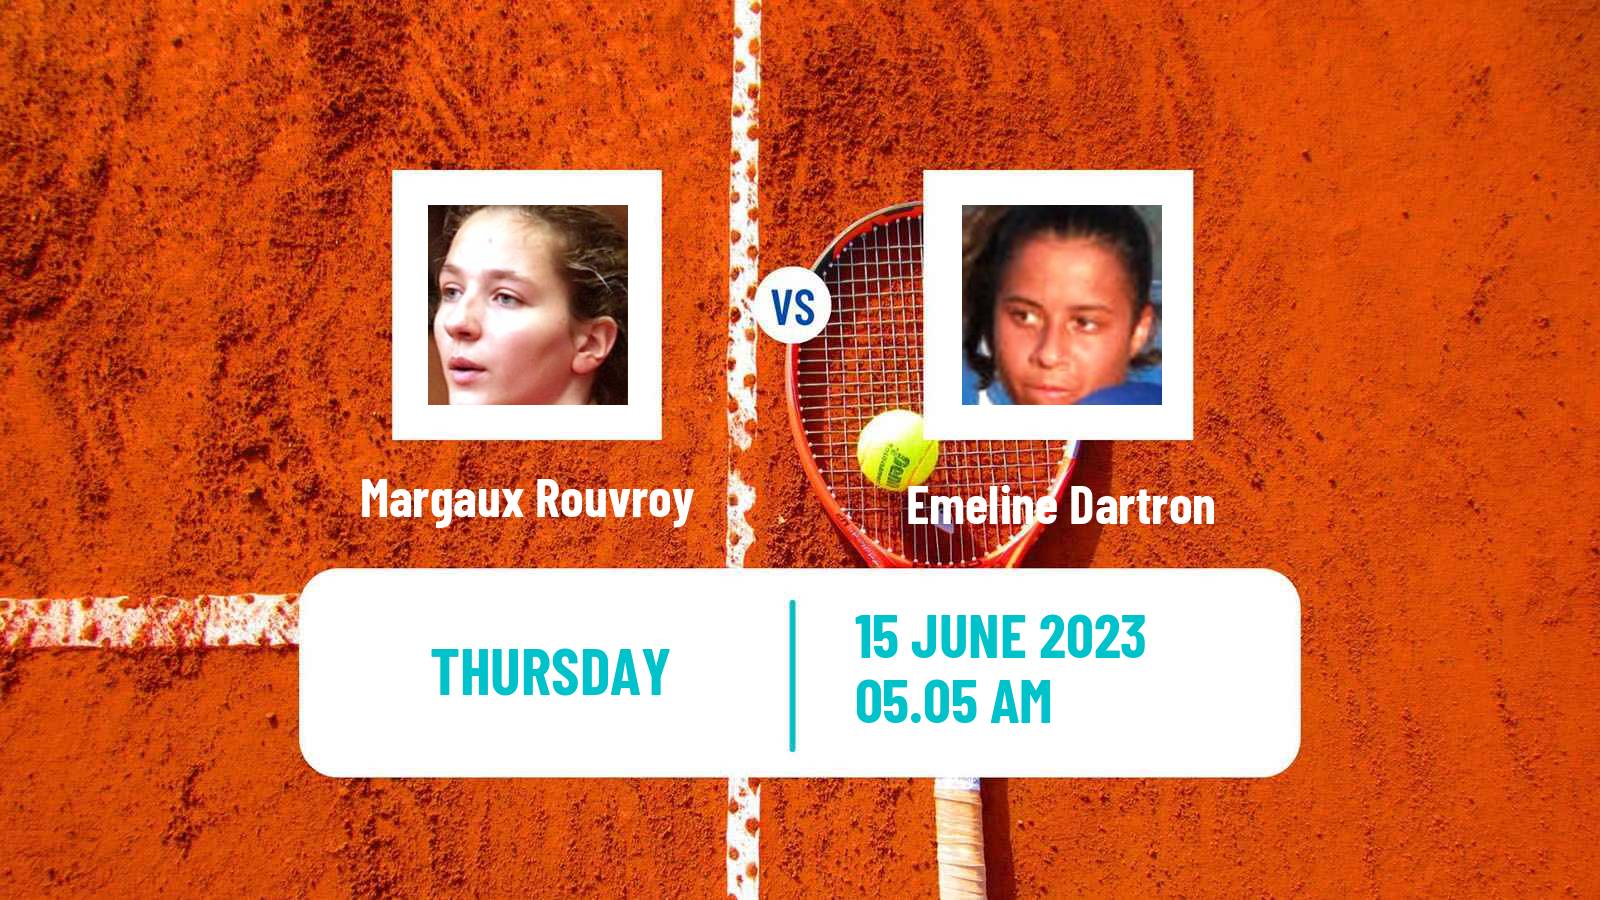 Tennis ITF W60 Biarritz Women Margaux Rouvroy - Emeline Dartron